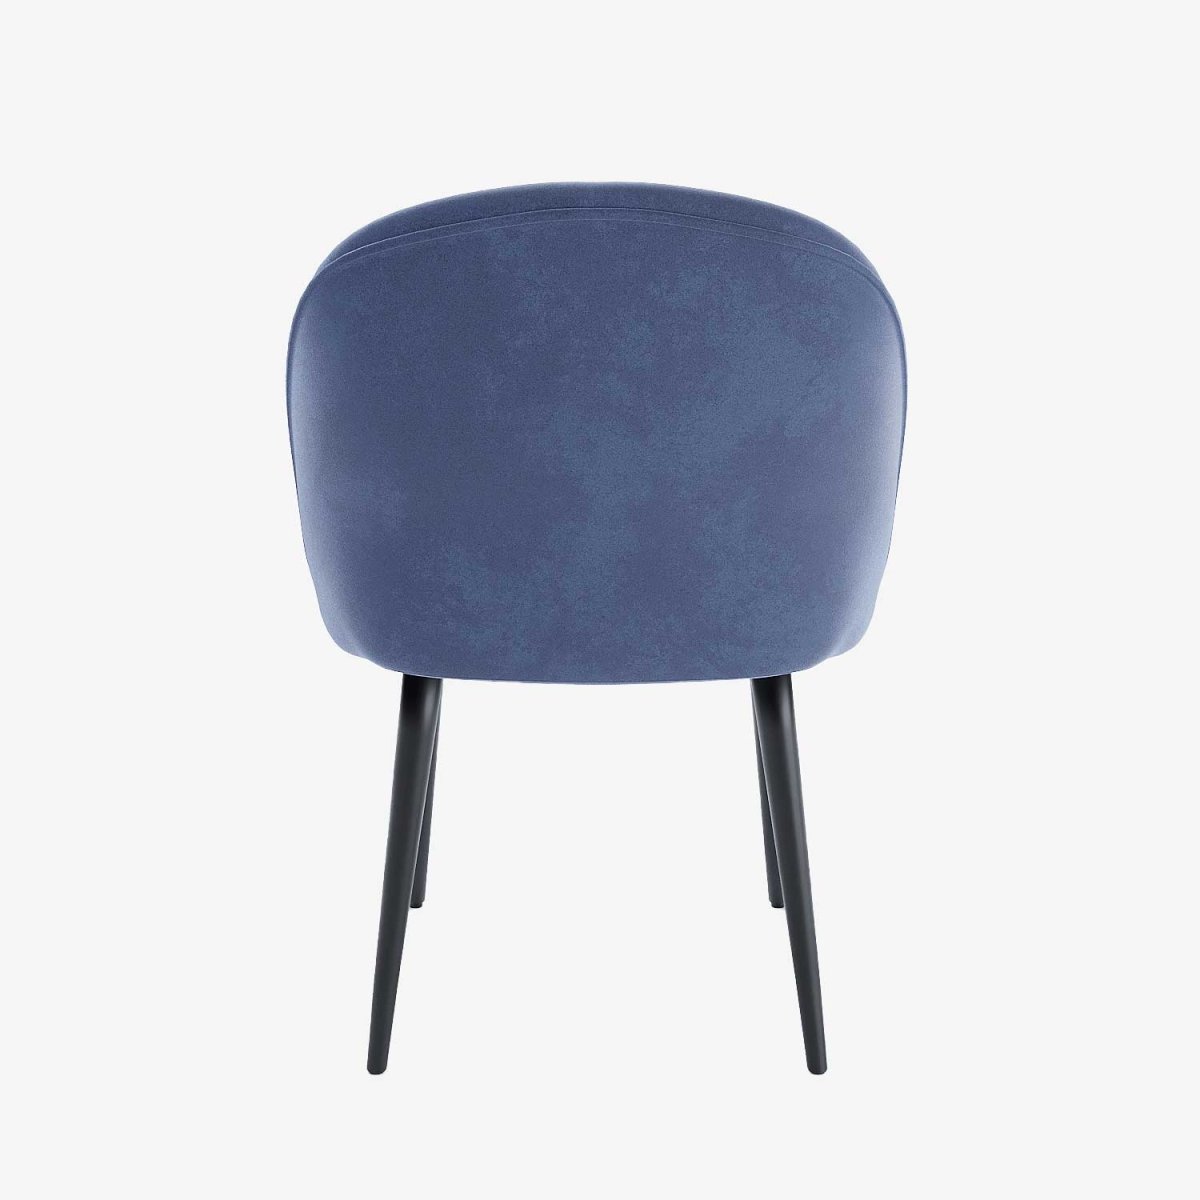 Lot de 2 chaises confortables pour le dos  en velours bleu & métal noir - Potiron Paris, Potiron Paris, la déco des intérieurs hauts en couleurs